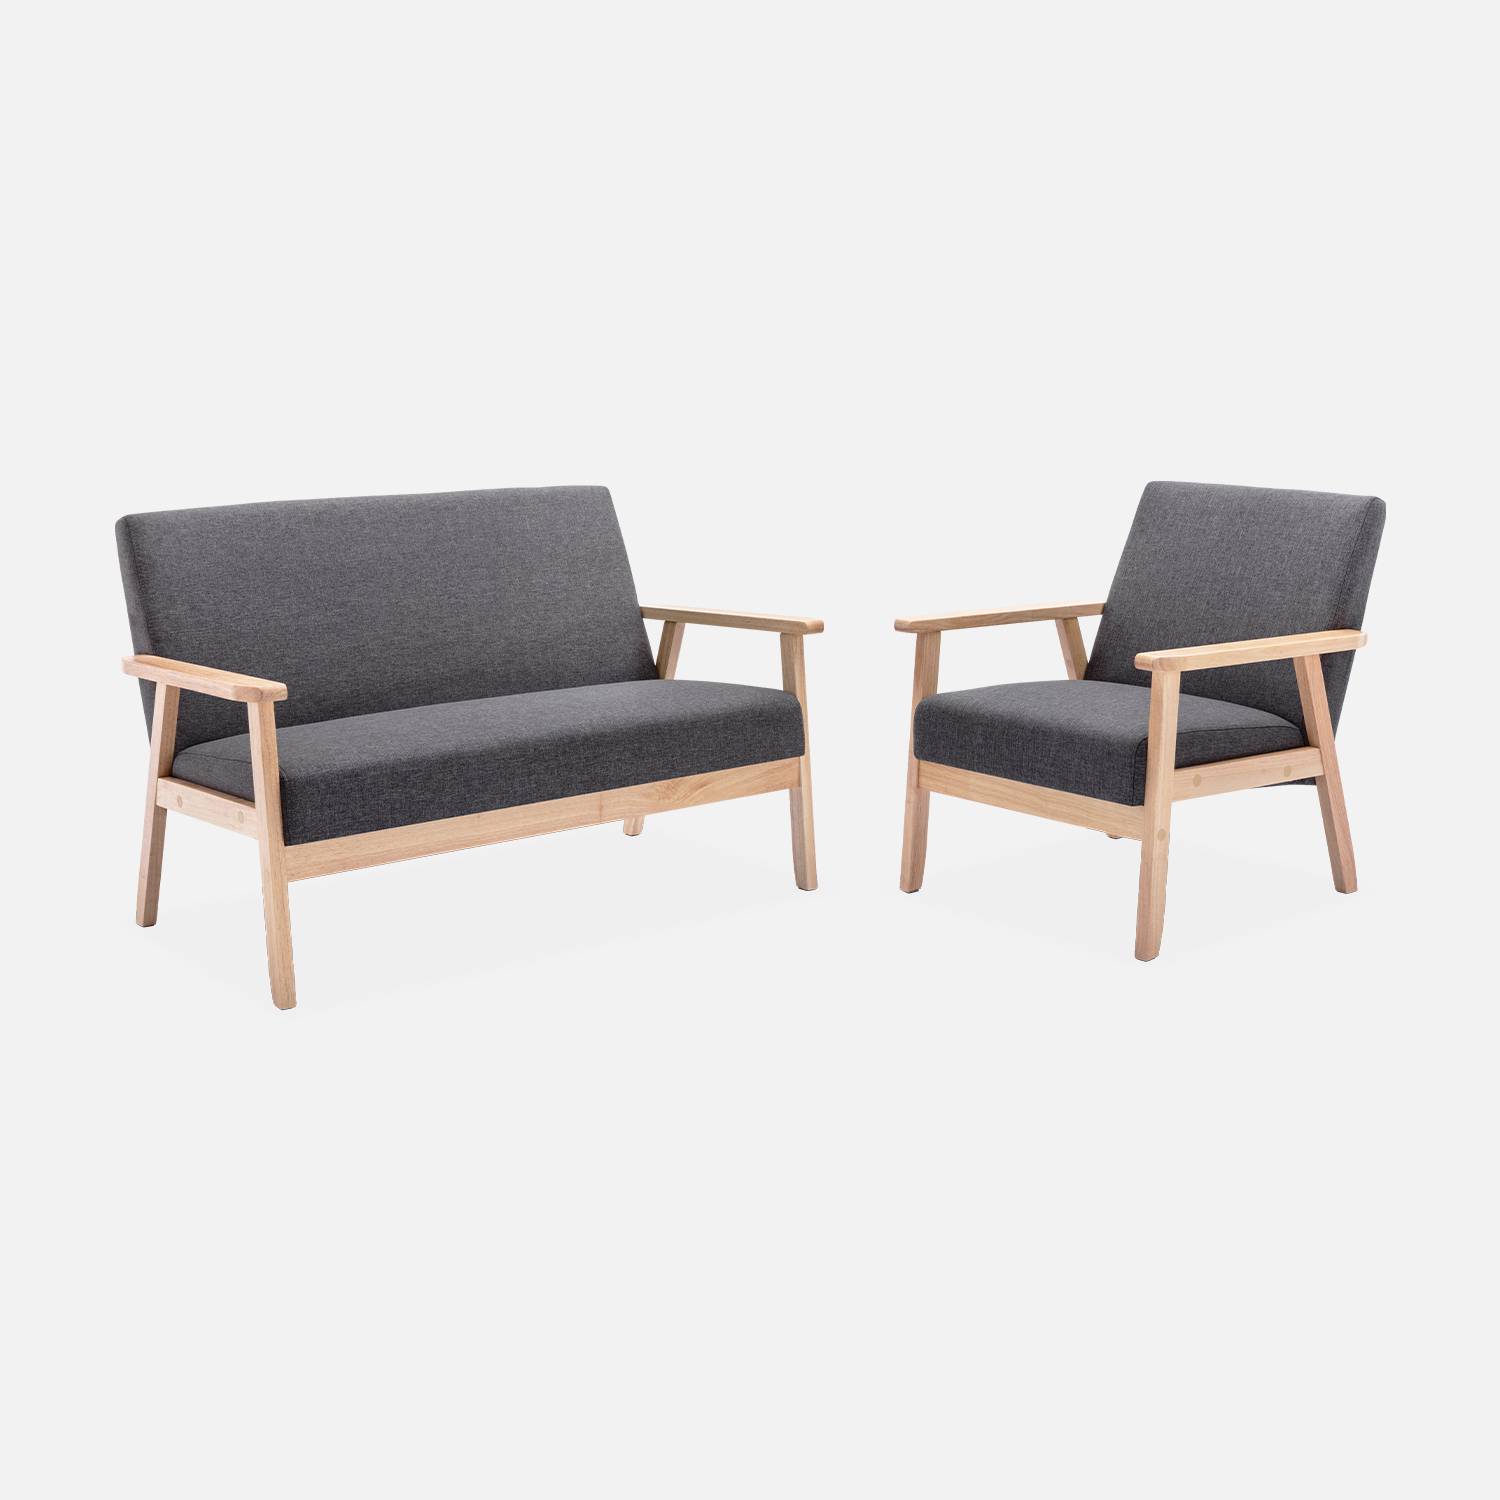 Banco y sillón escandinavos de madera y tela gris oscuro | sweeek